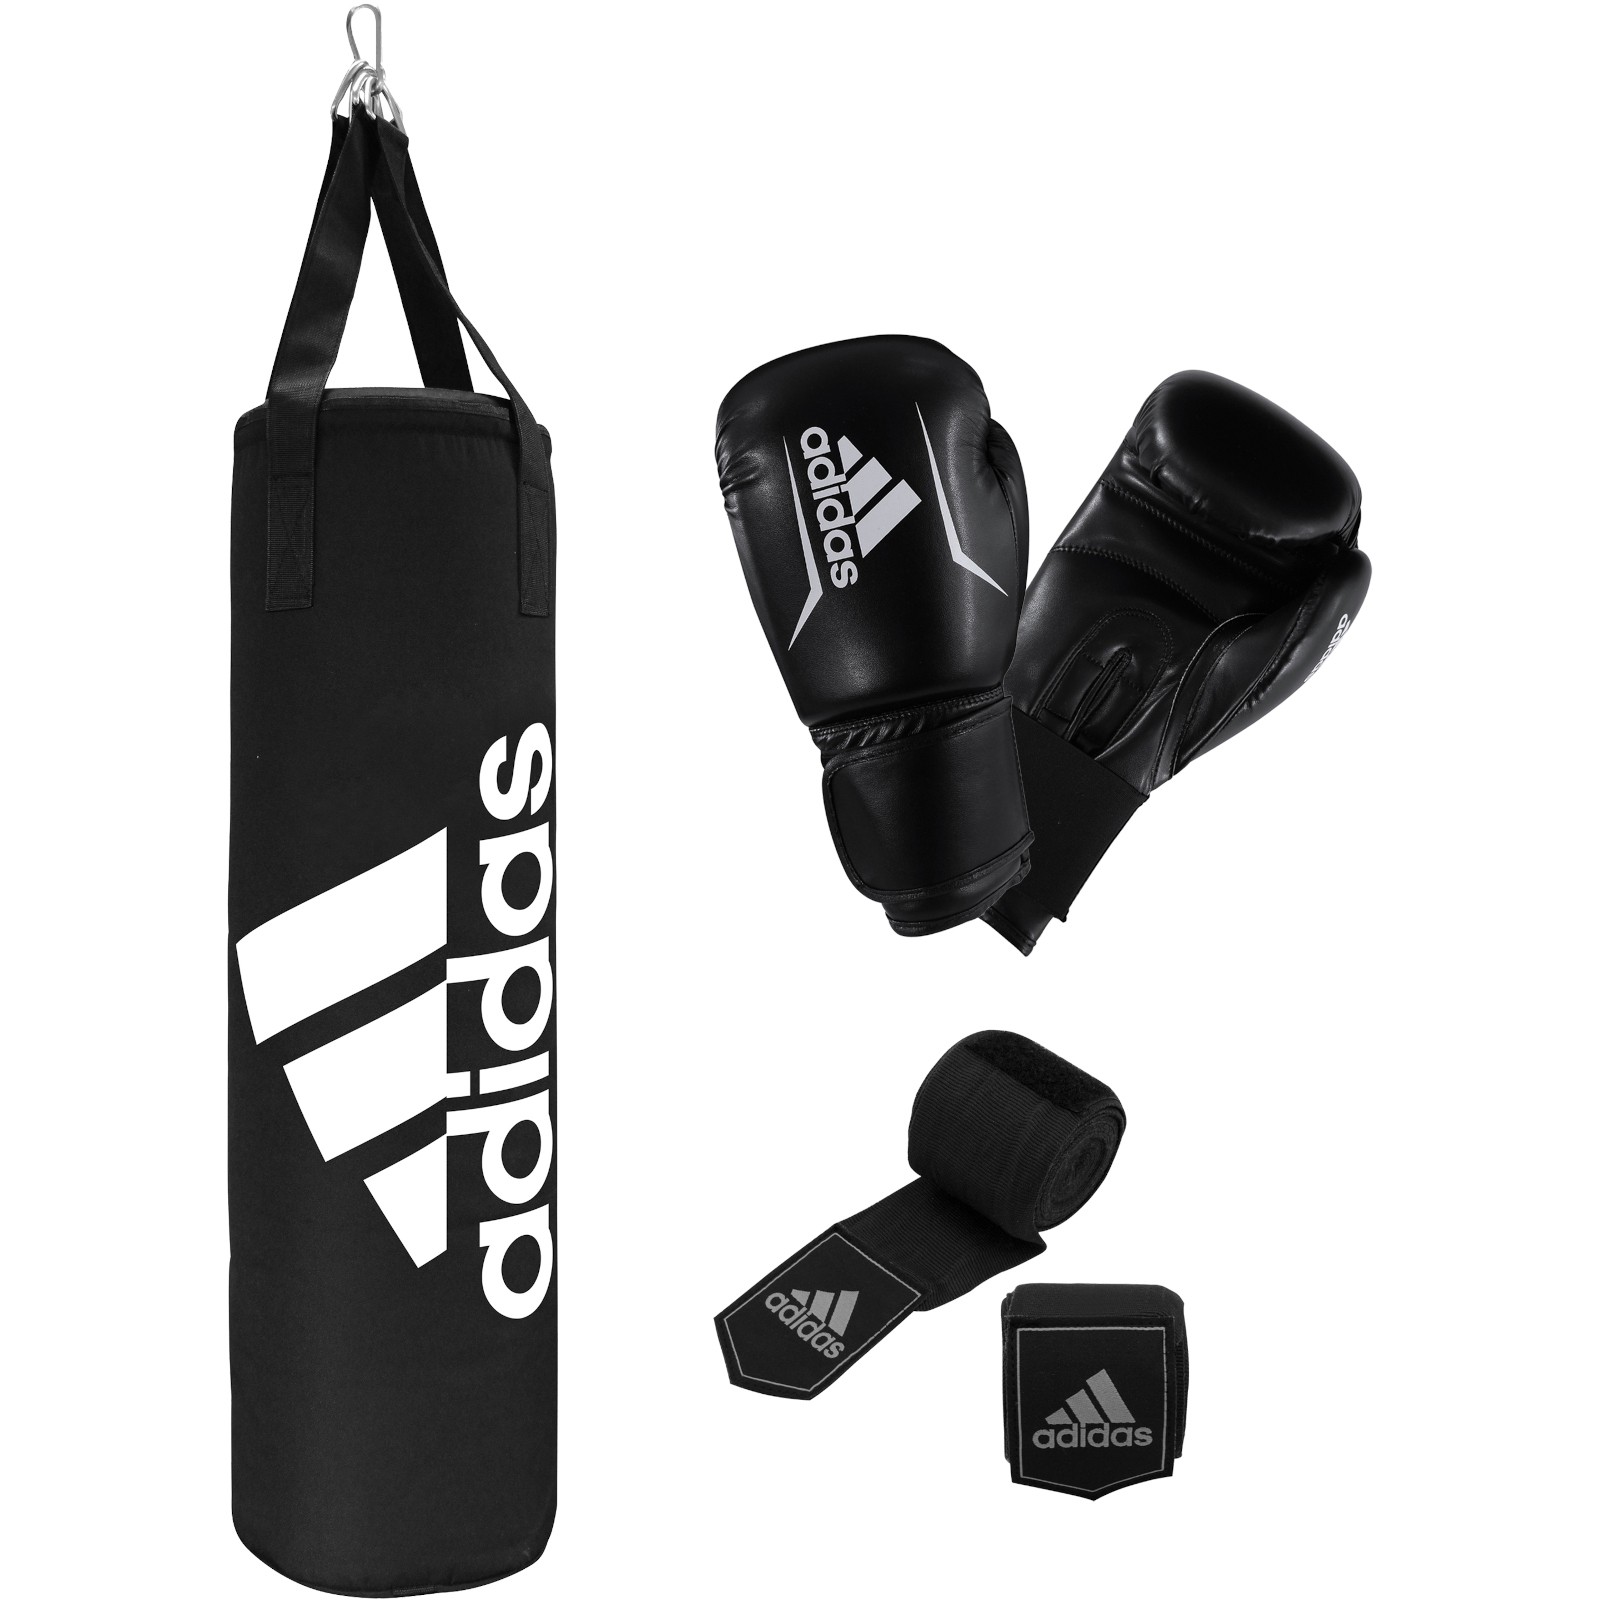 van moreel Lauw adidas Boxing Boksset - Fitshop